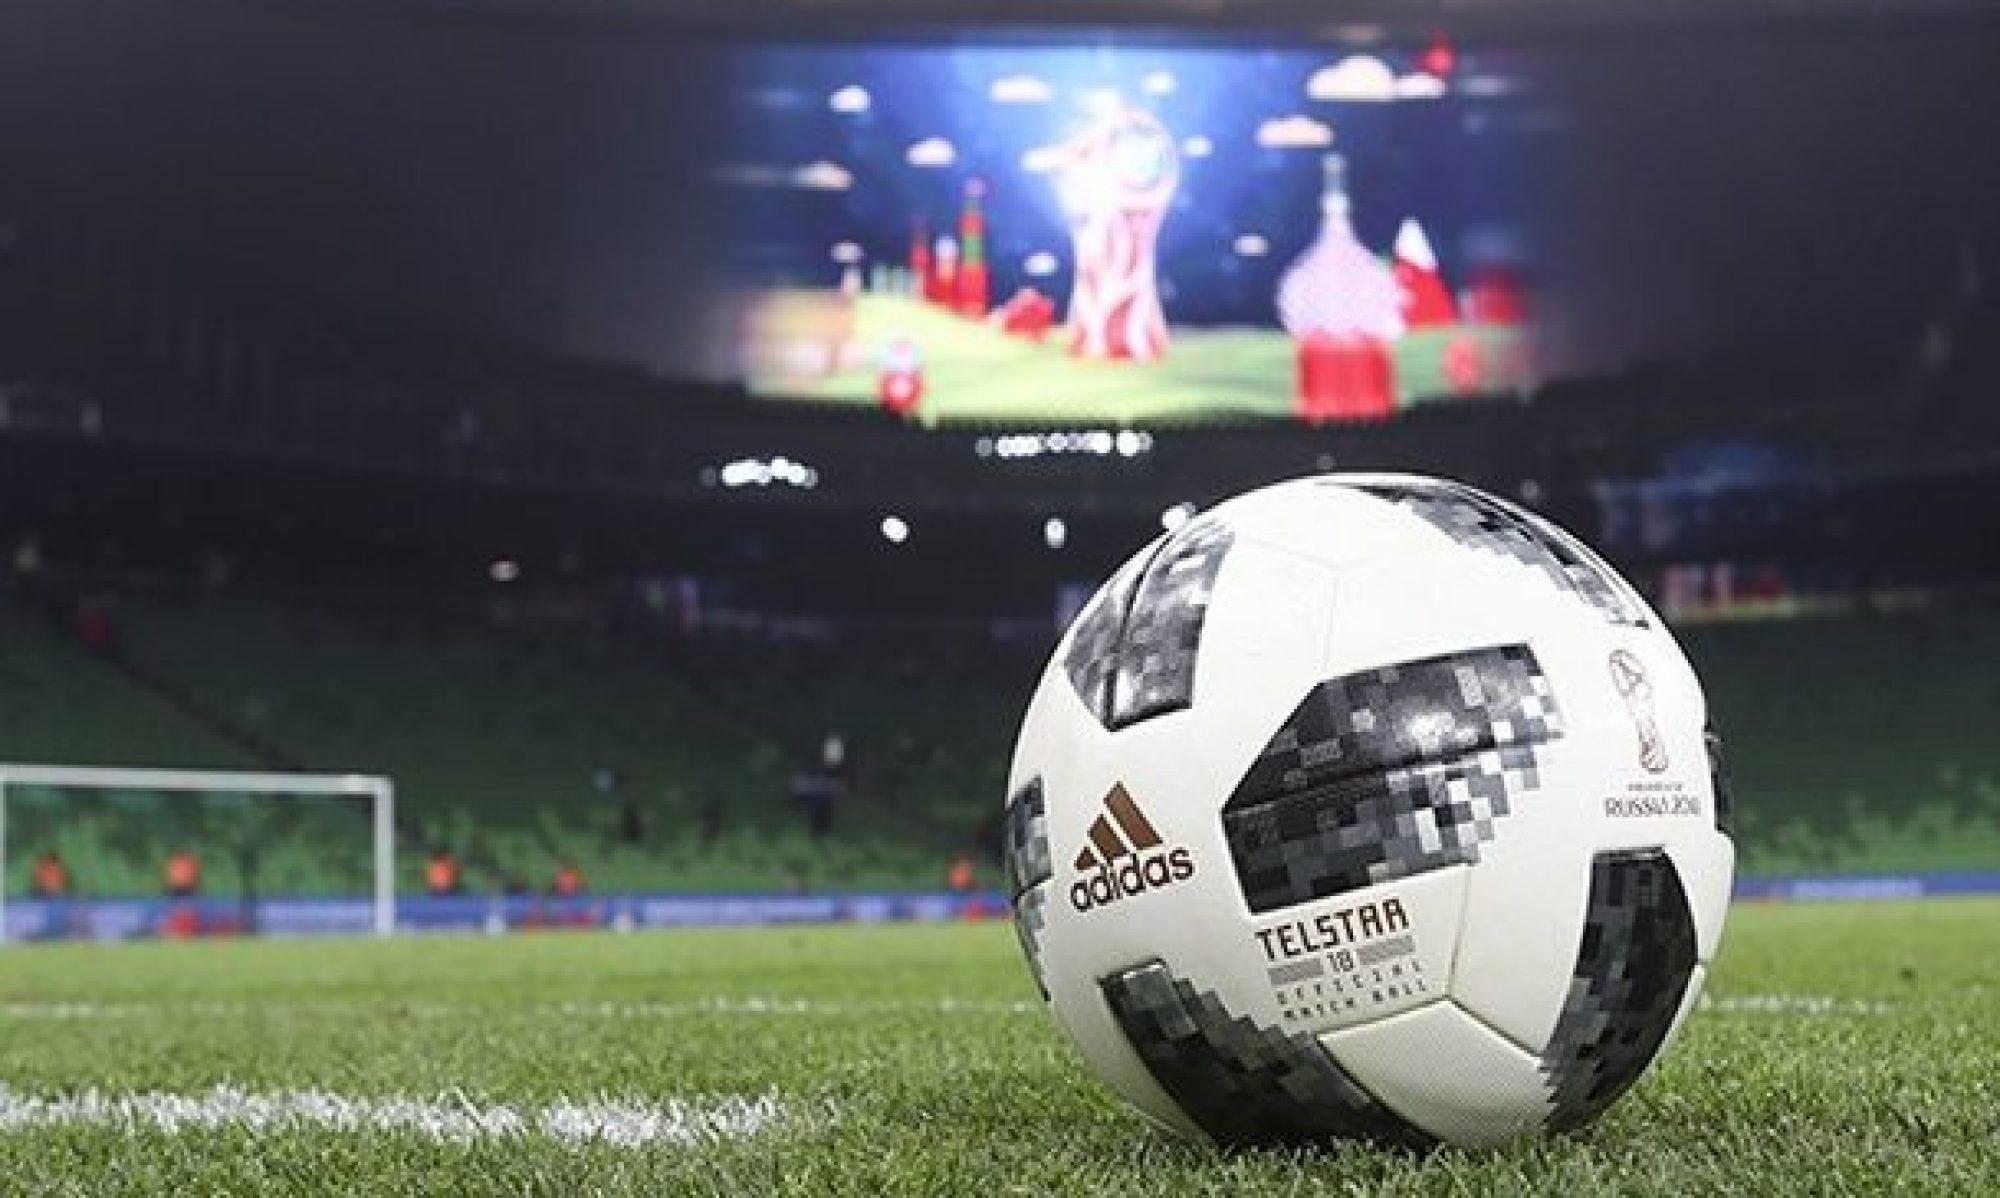 Немецкий клуб проиграл 0:37, решив во время матча соблюдать правила социального дистанцирования